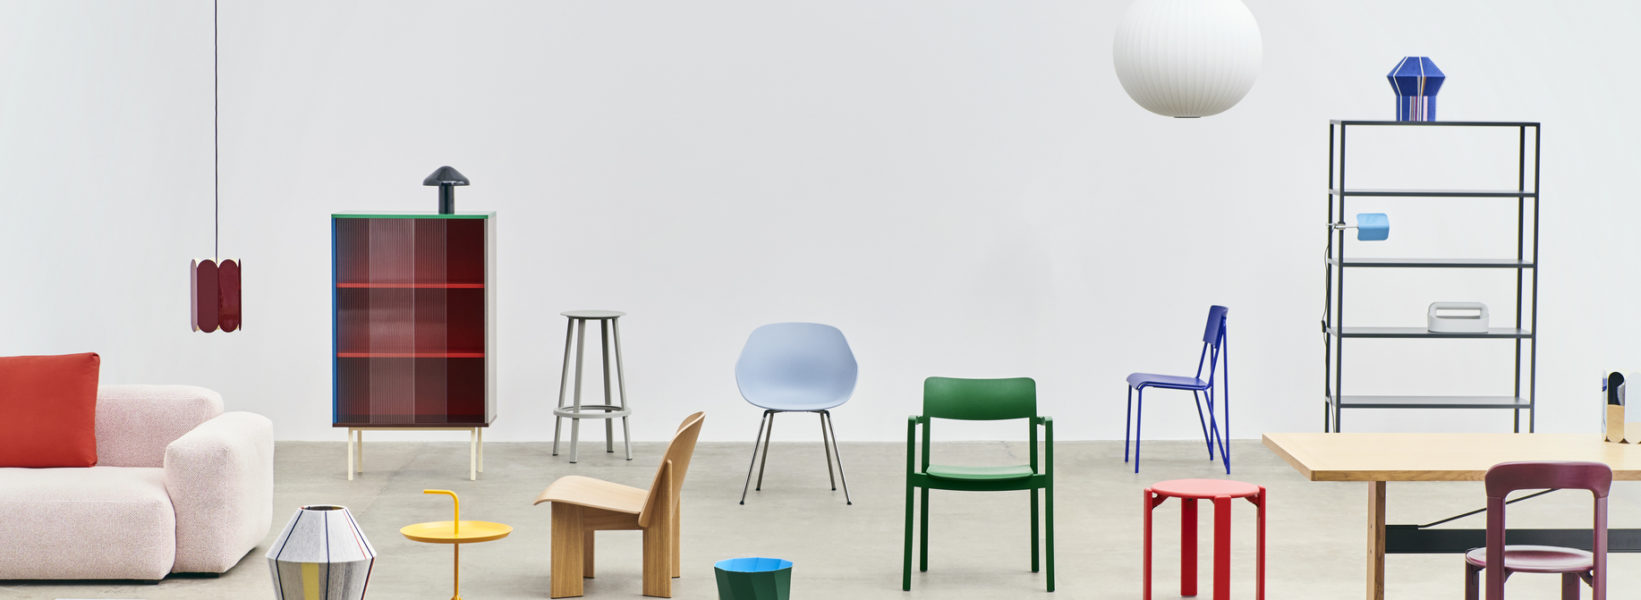 mobilier-hay-design-icon-chaise-tabouret-fauteuil-meuble-agencement-luminaires-momentum-store-rue-des-trois-mollettes-lille-scandinave-canape